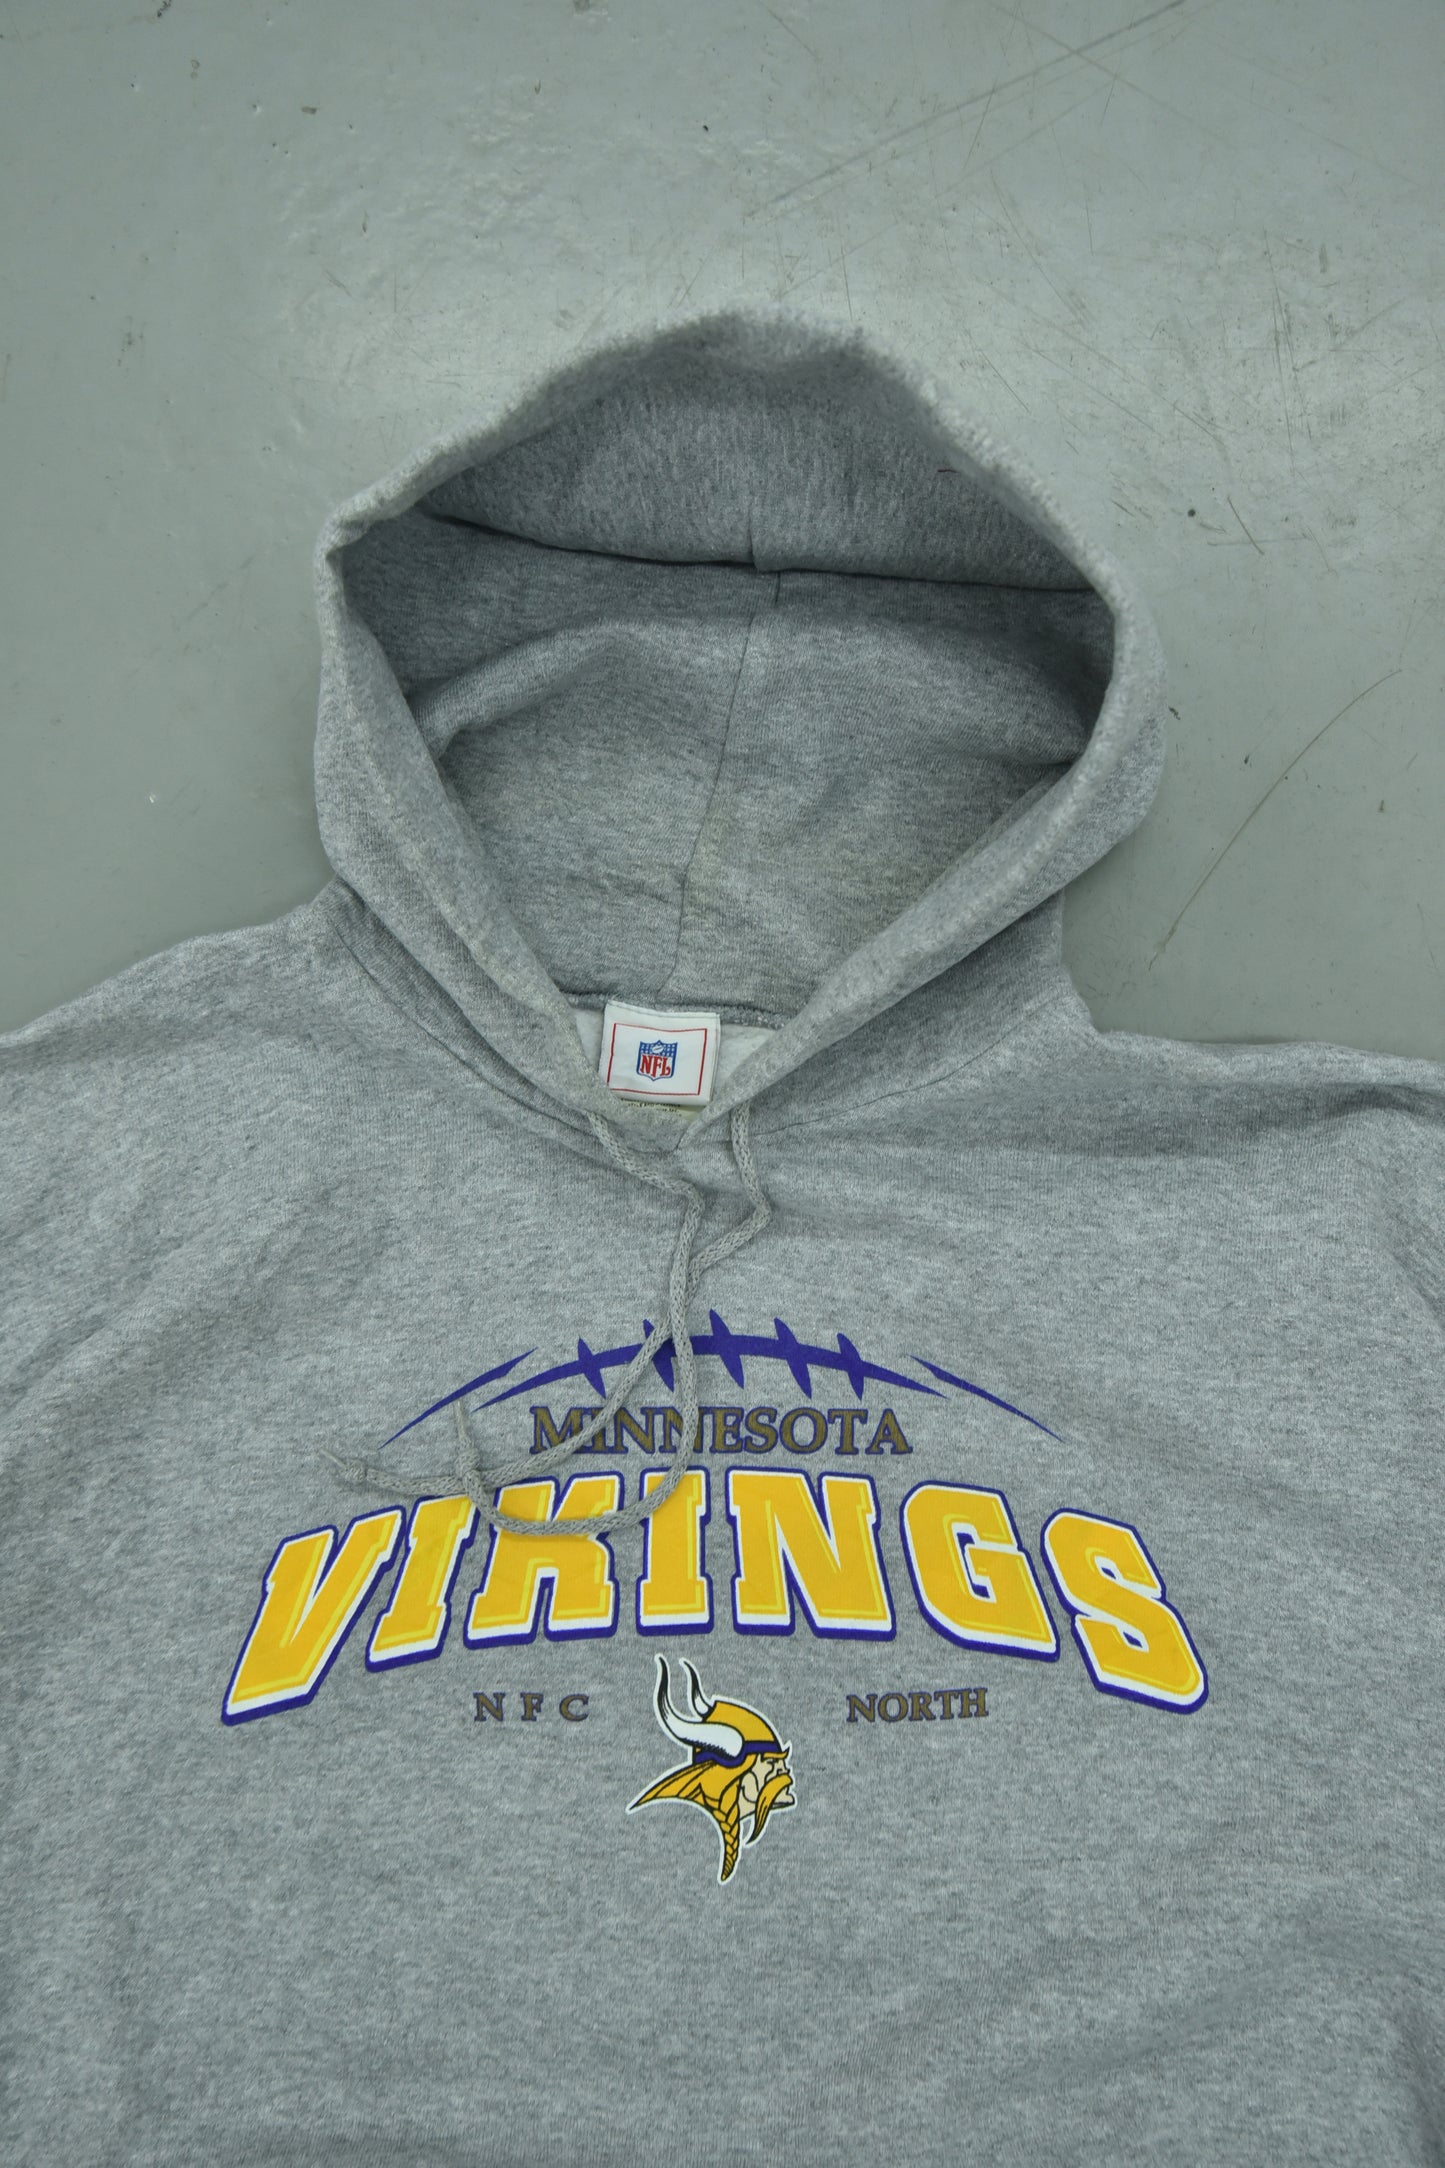 Vintage VIKINGS NFL Hoodies / XL